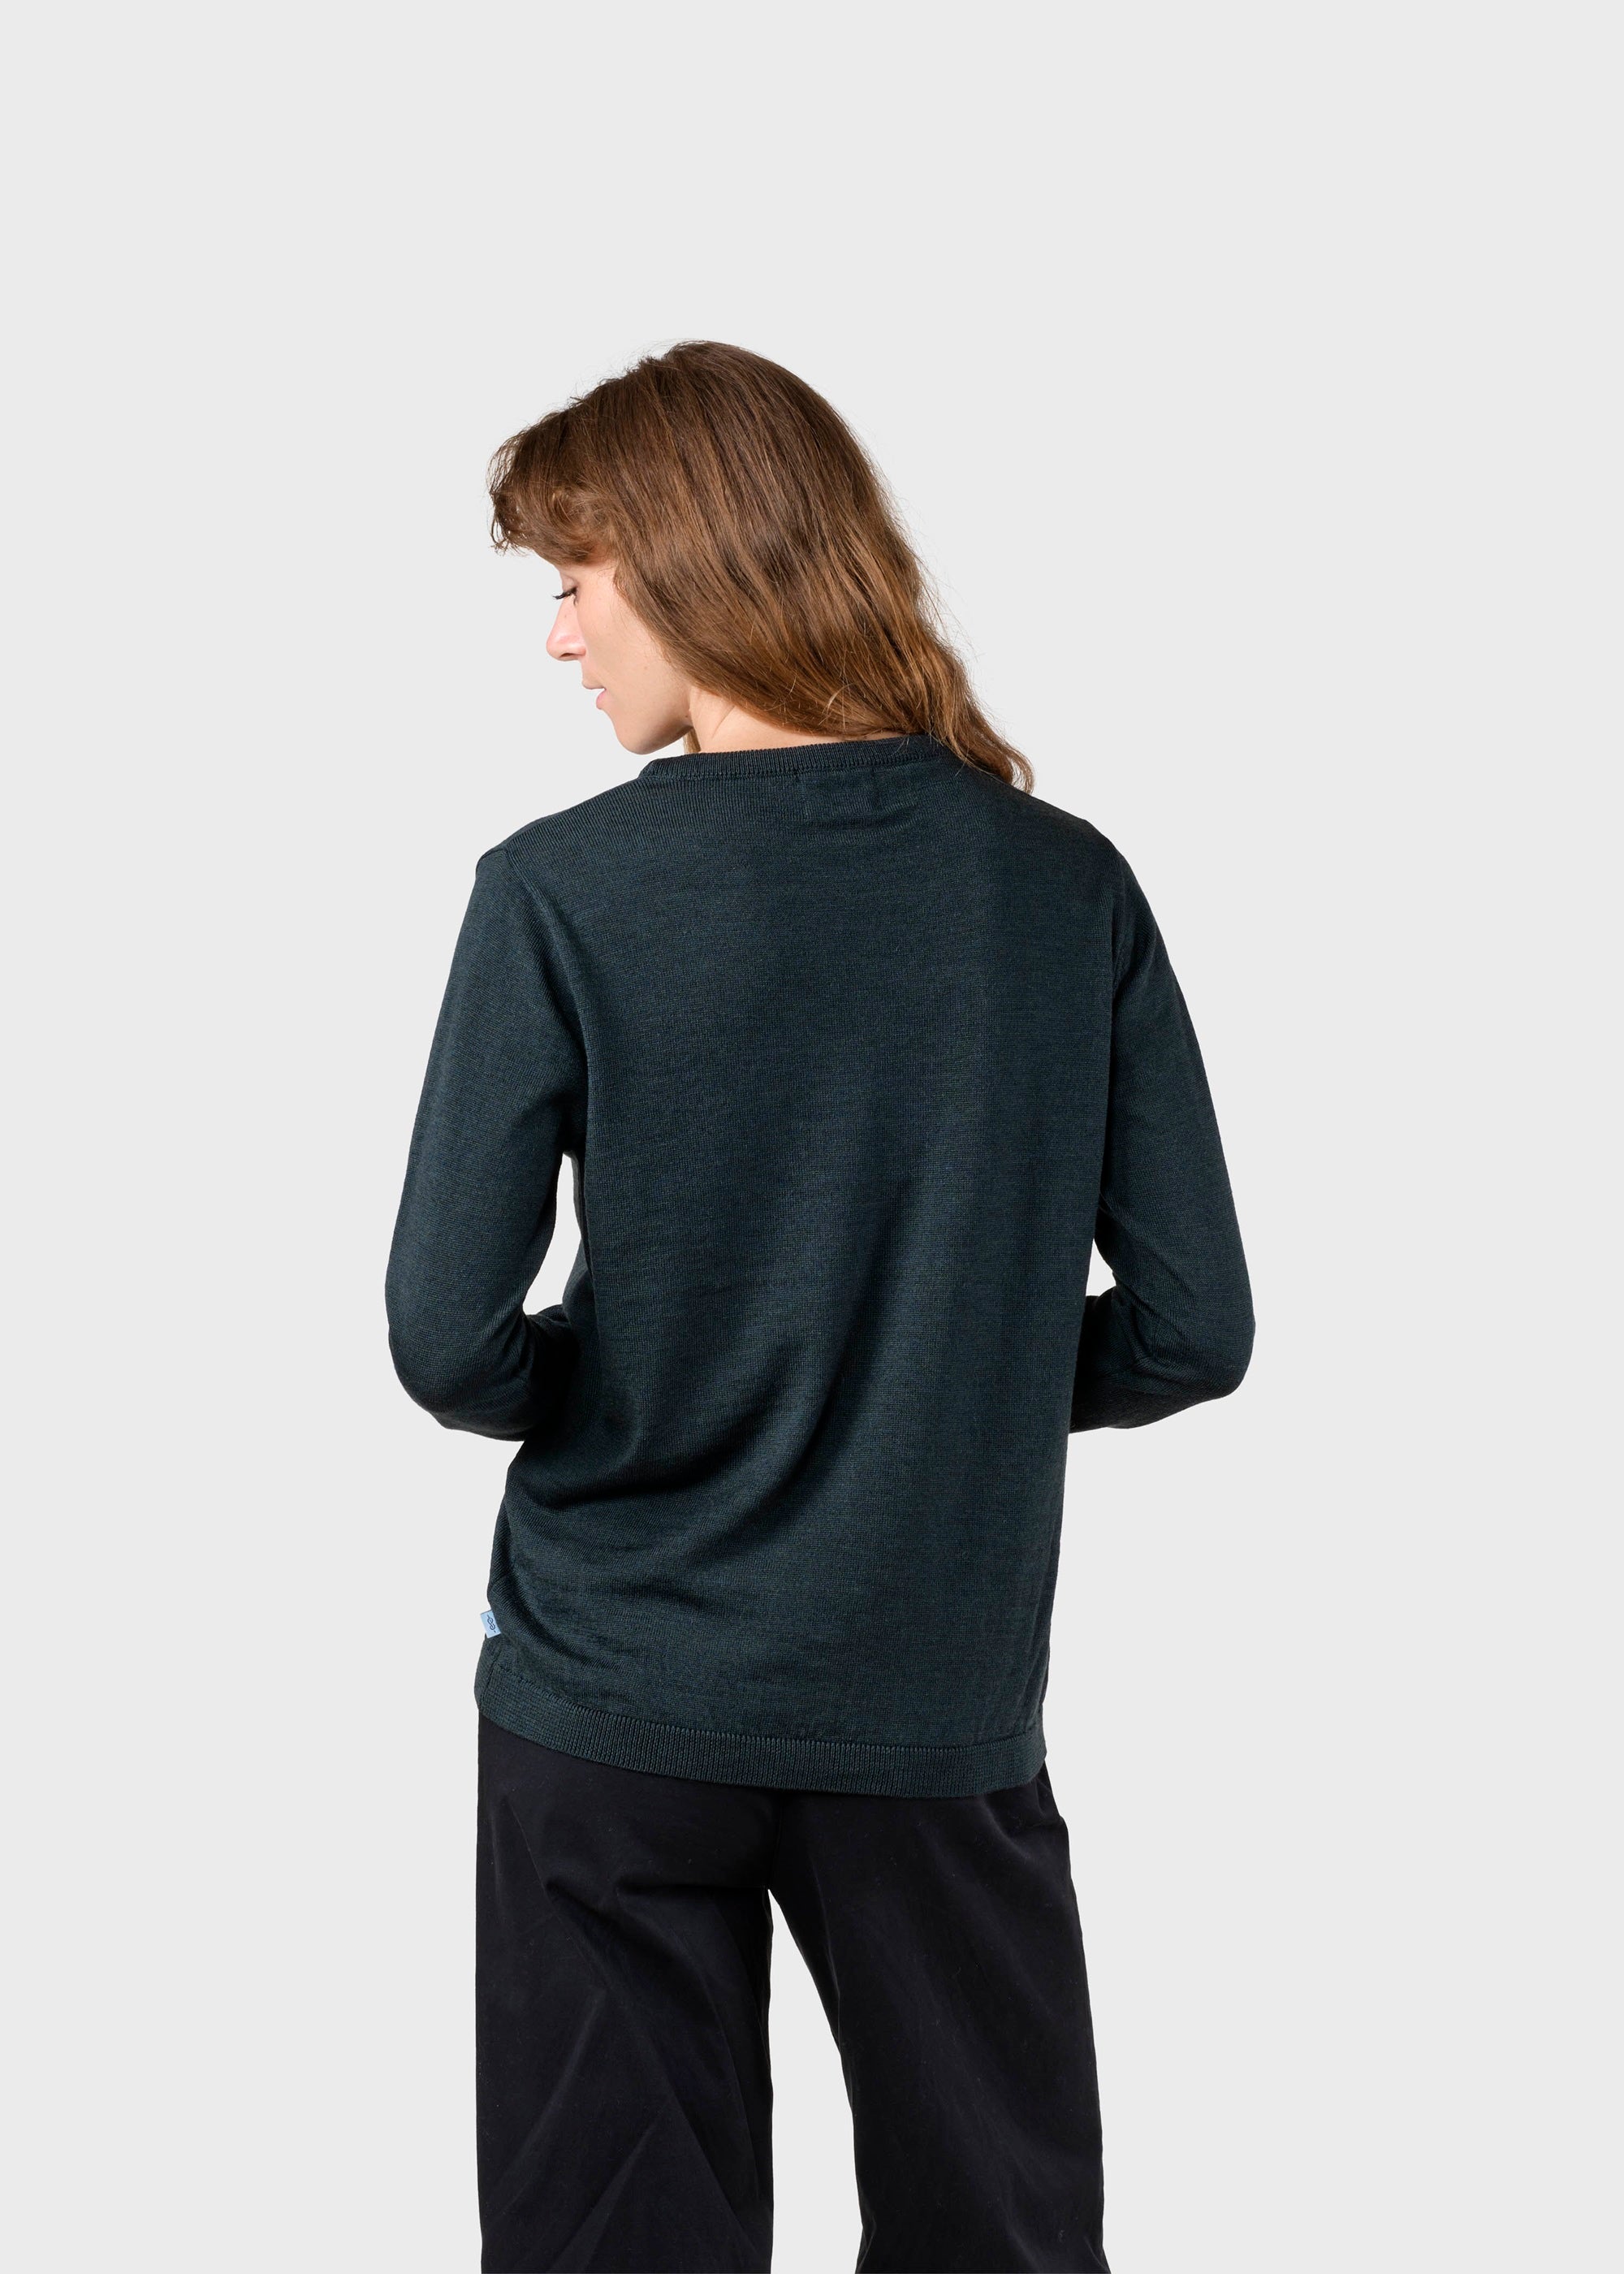 Women's thin Merino Wool Sweater Olive Green